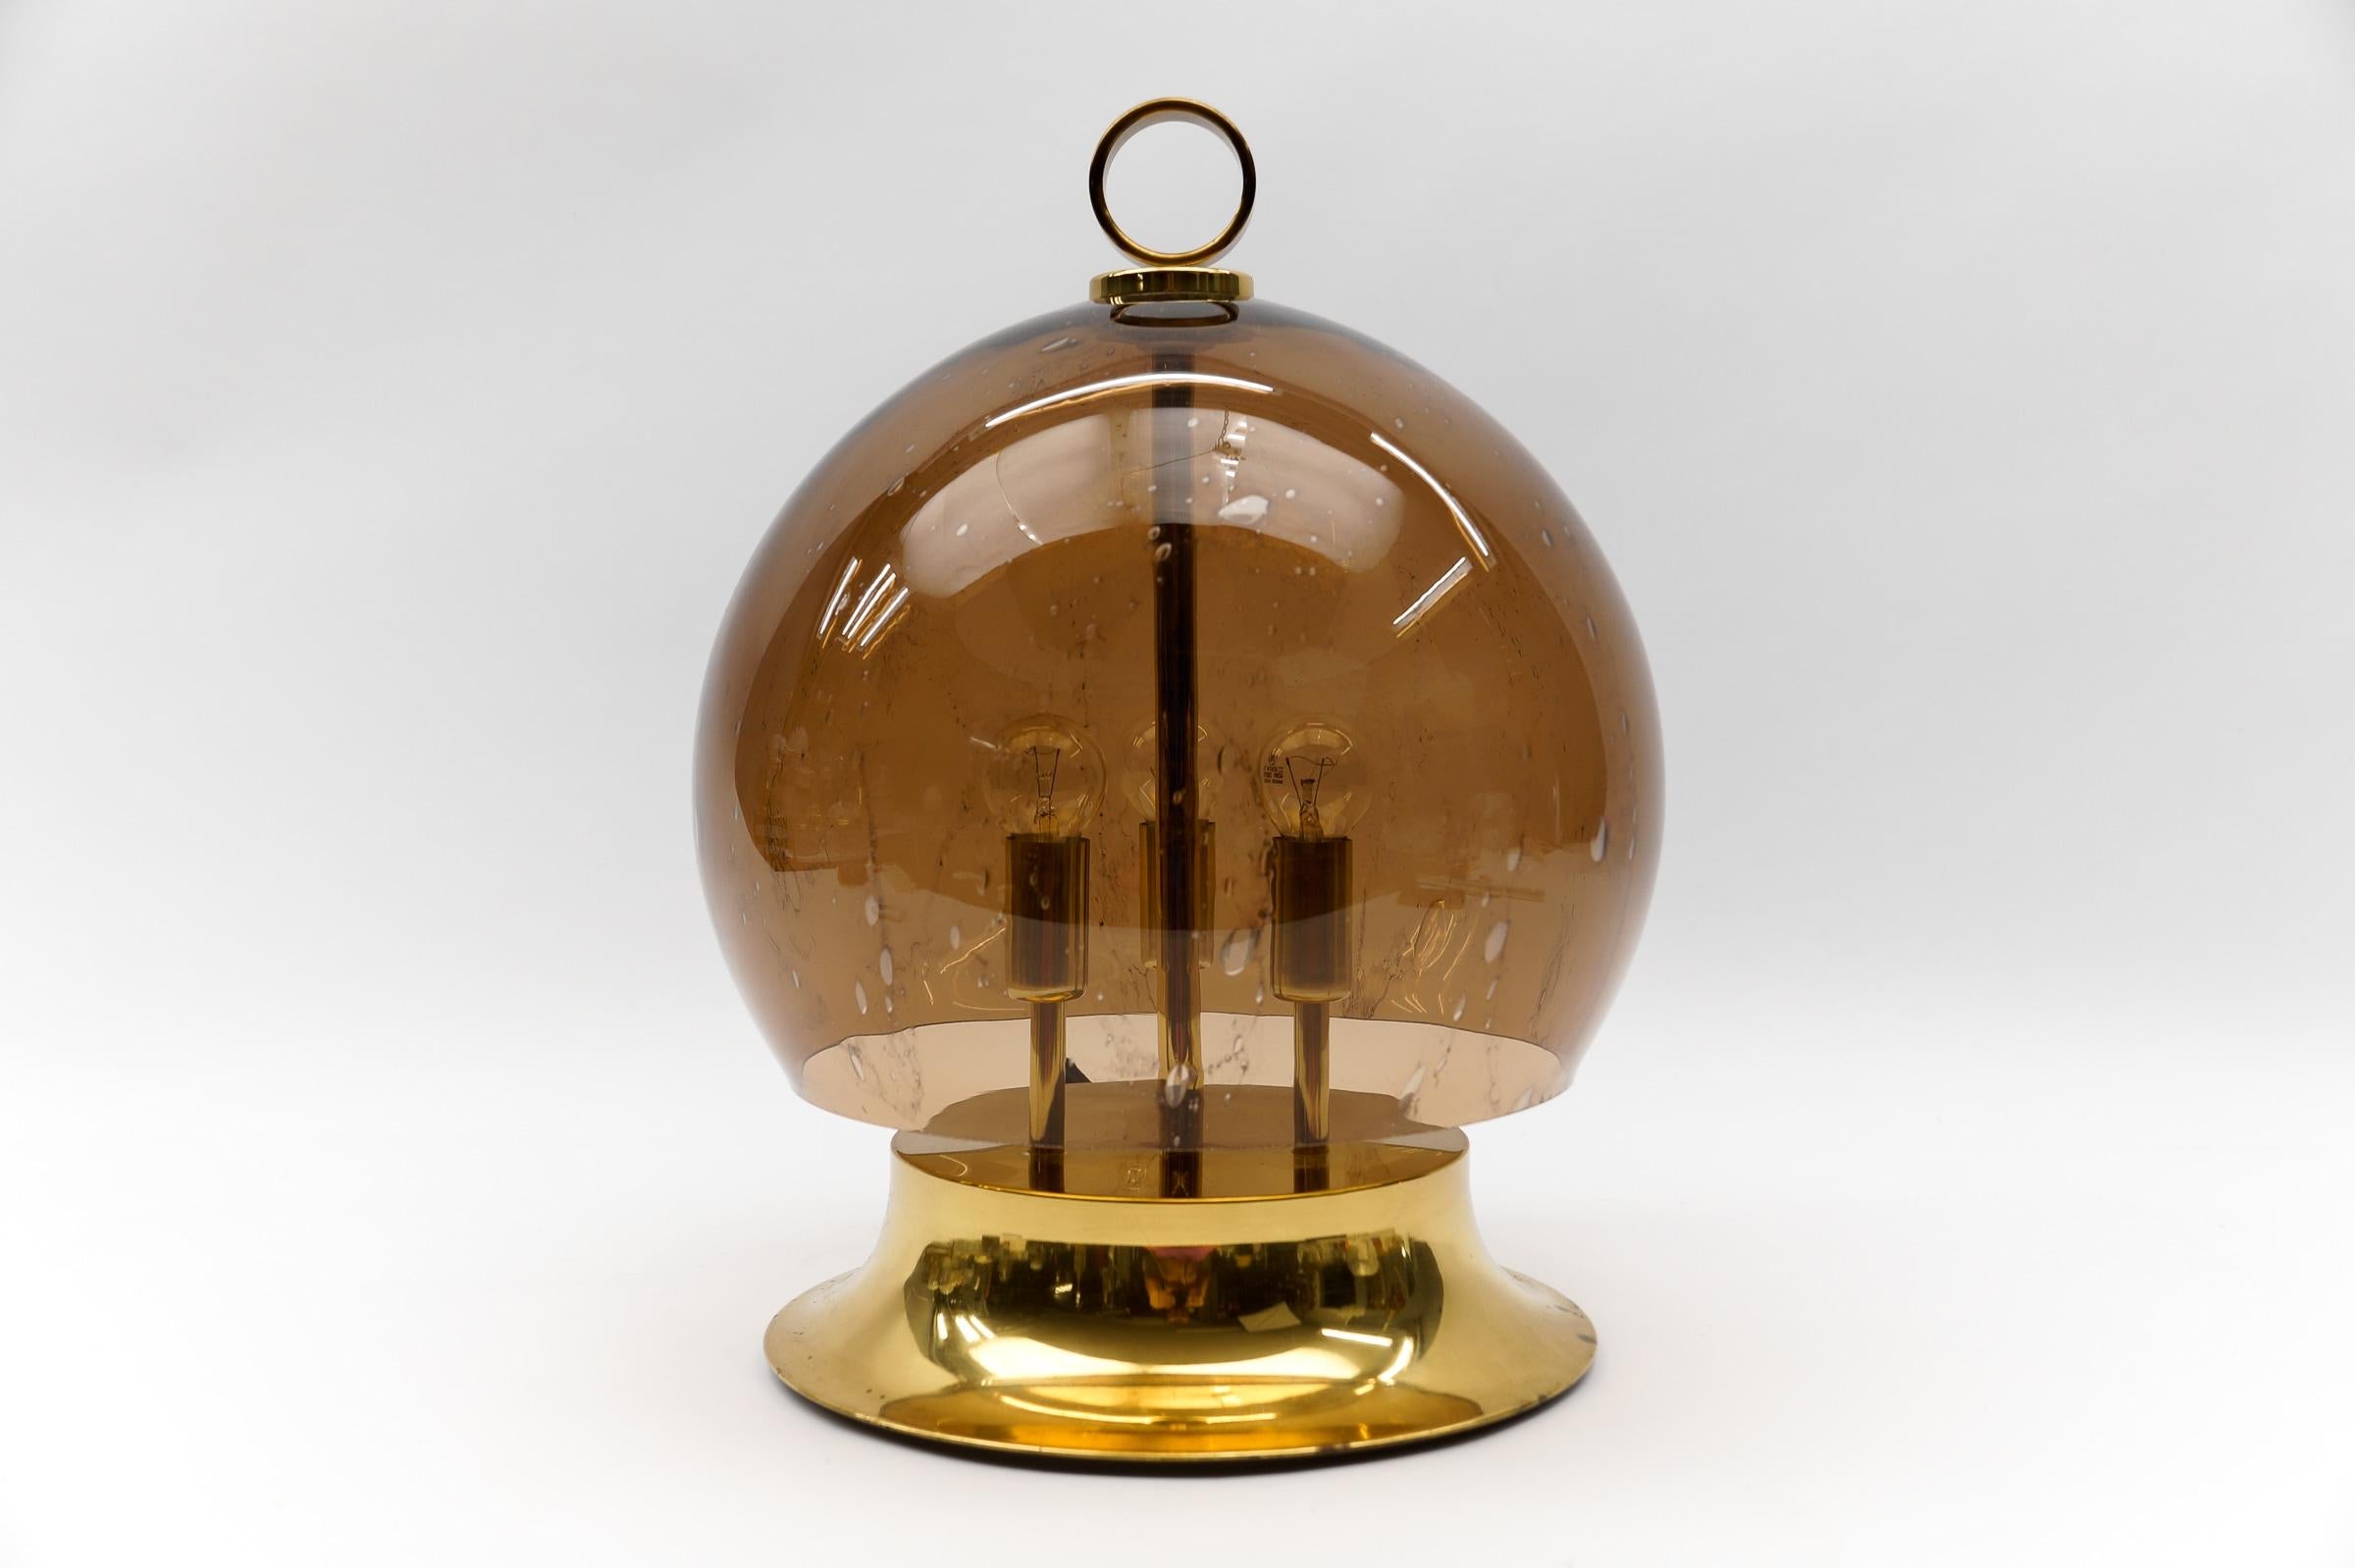 Lampe de table moderne du milieu du siècle en laiton et verre, années 1960

Cette lampe de table dorée est dotée d'un globe en verre fumé soufflé à la bouche.

Dimension
Hauteur : 21.25 in (54 cm)
Diamètre : 17,71 in (45 cm)

La lampe nécessite 3